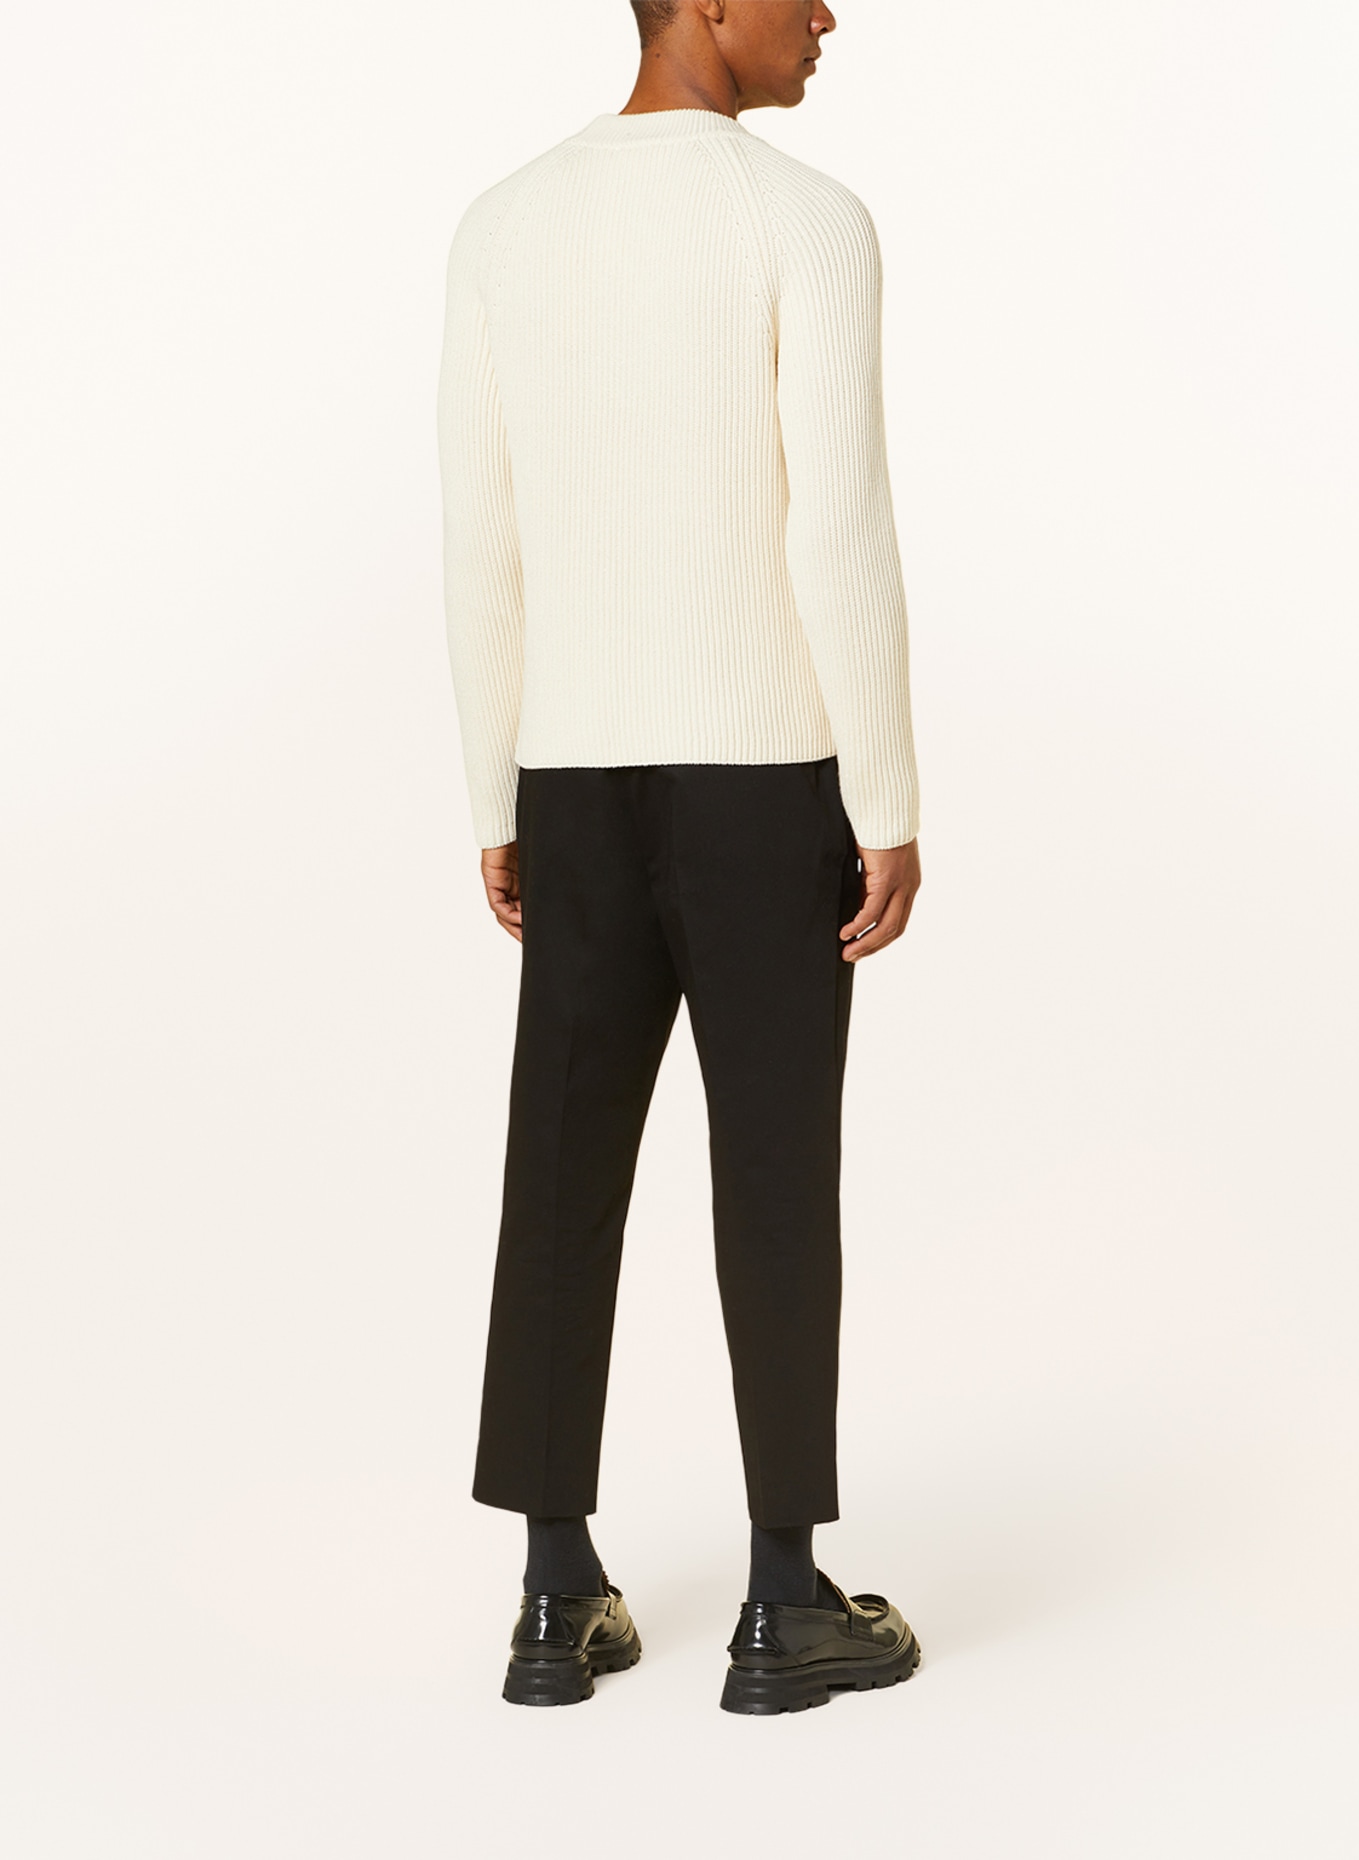 AMI PARIS Sweater, Color: ECRU (Image 3)